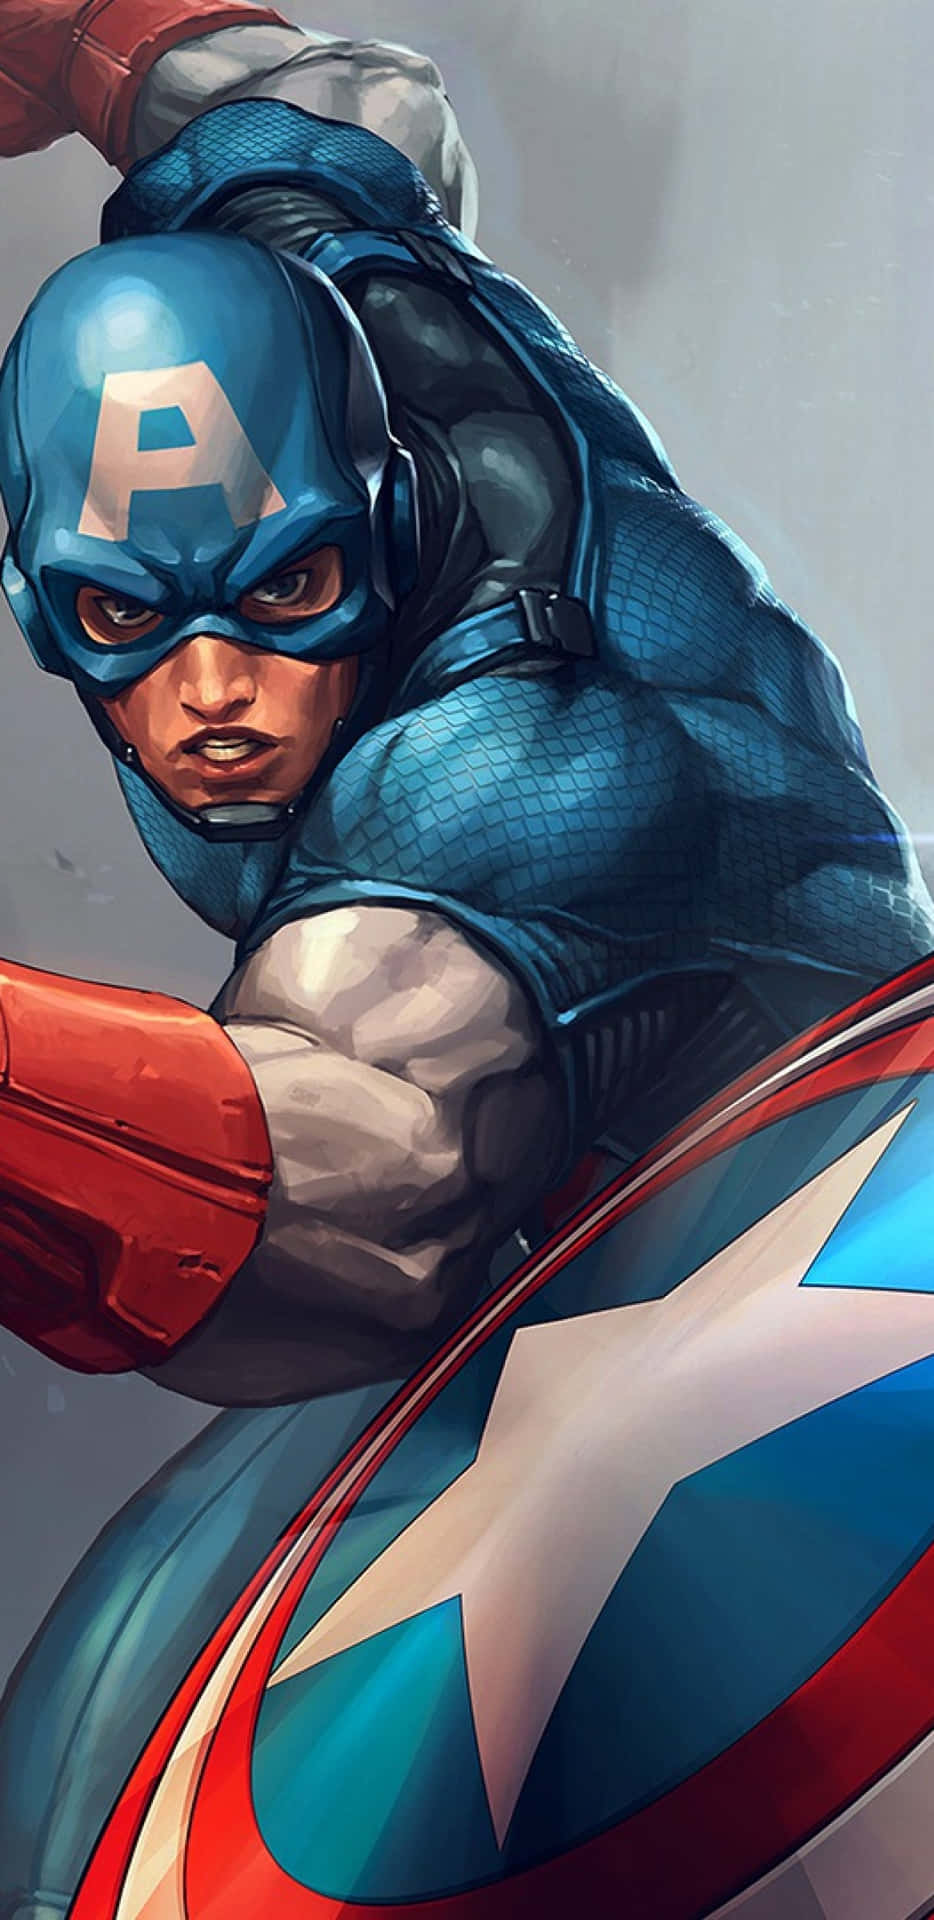 Pixel3xl Bakgrundsbild Med Captain America Comic.